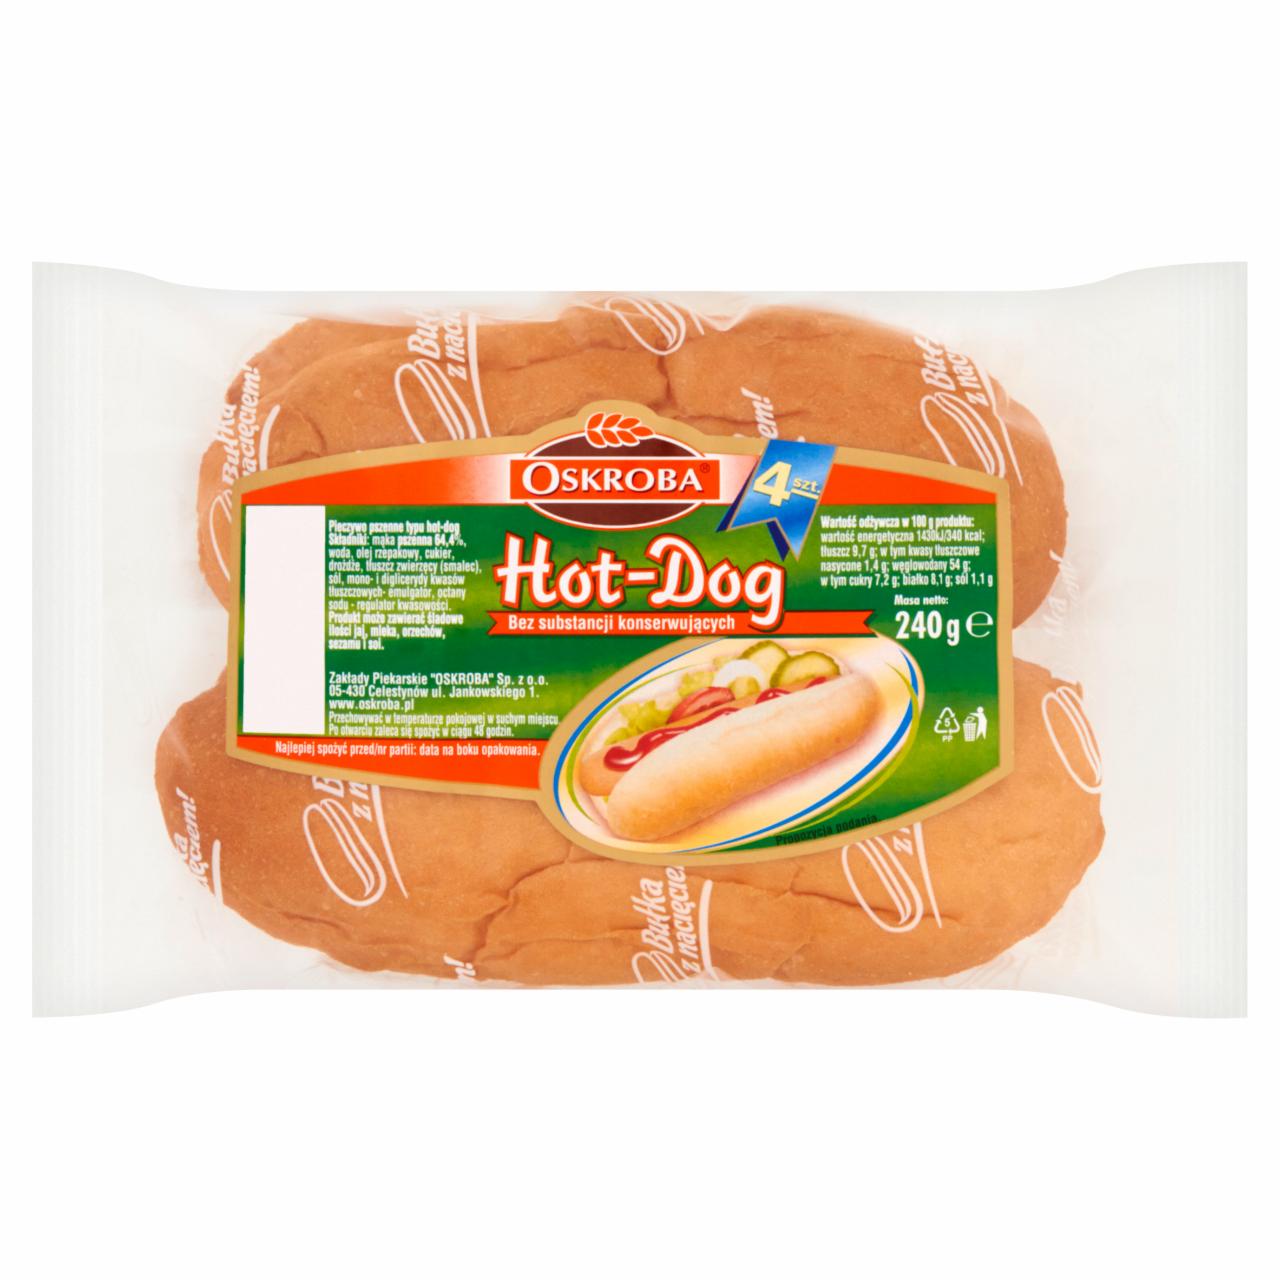 Zdjęcia - Oskroba Hot-Dog Pieczywo pszenne 240 g (4 sztuki)